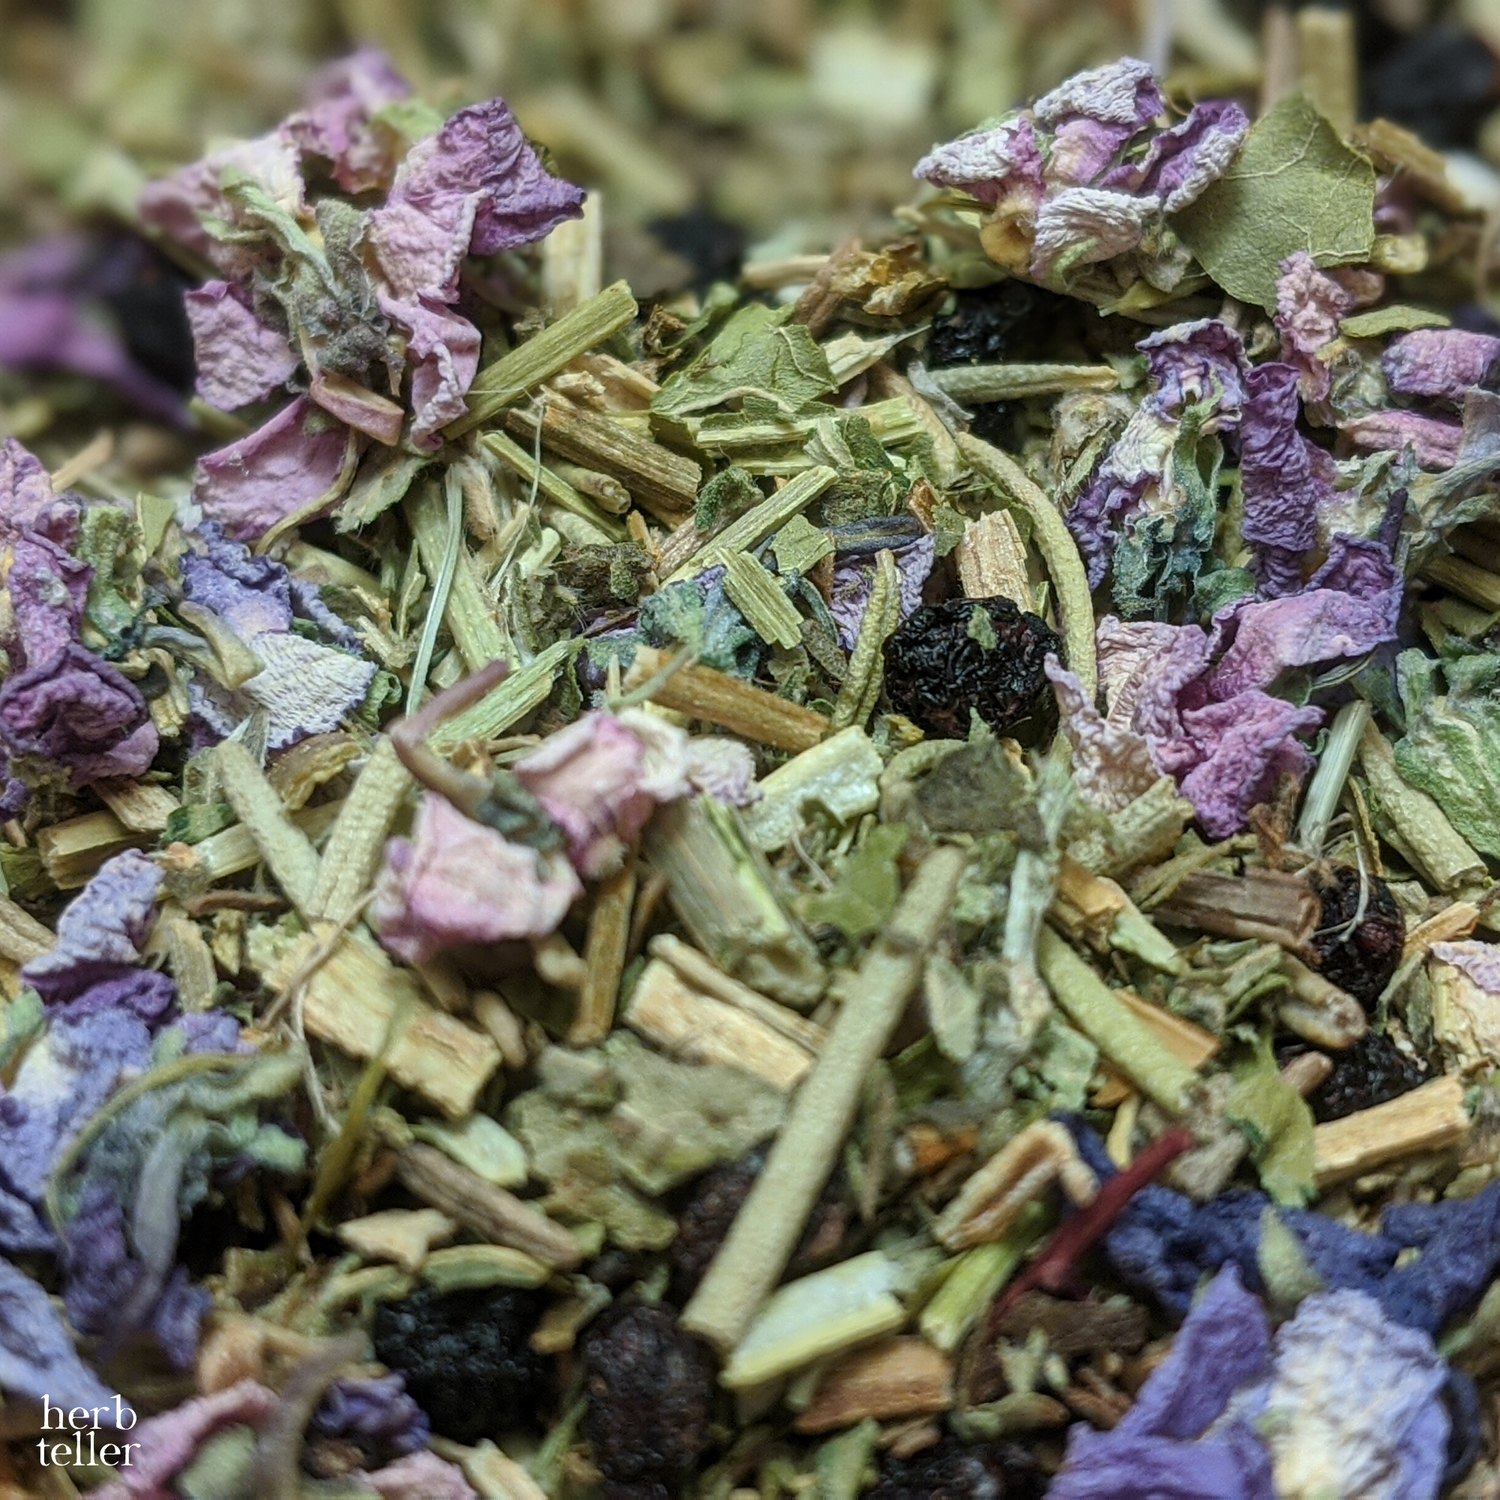 Vera Veritas (DCI Vera Stanhope Herbal Tea) - Original City Apothecary